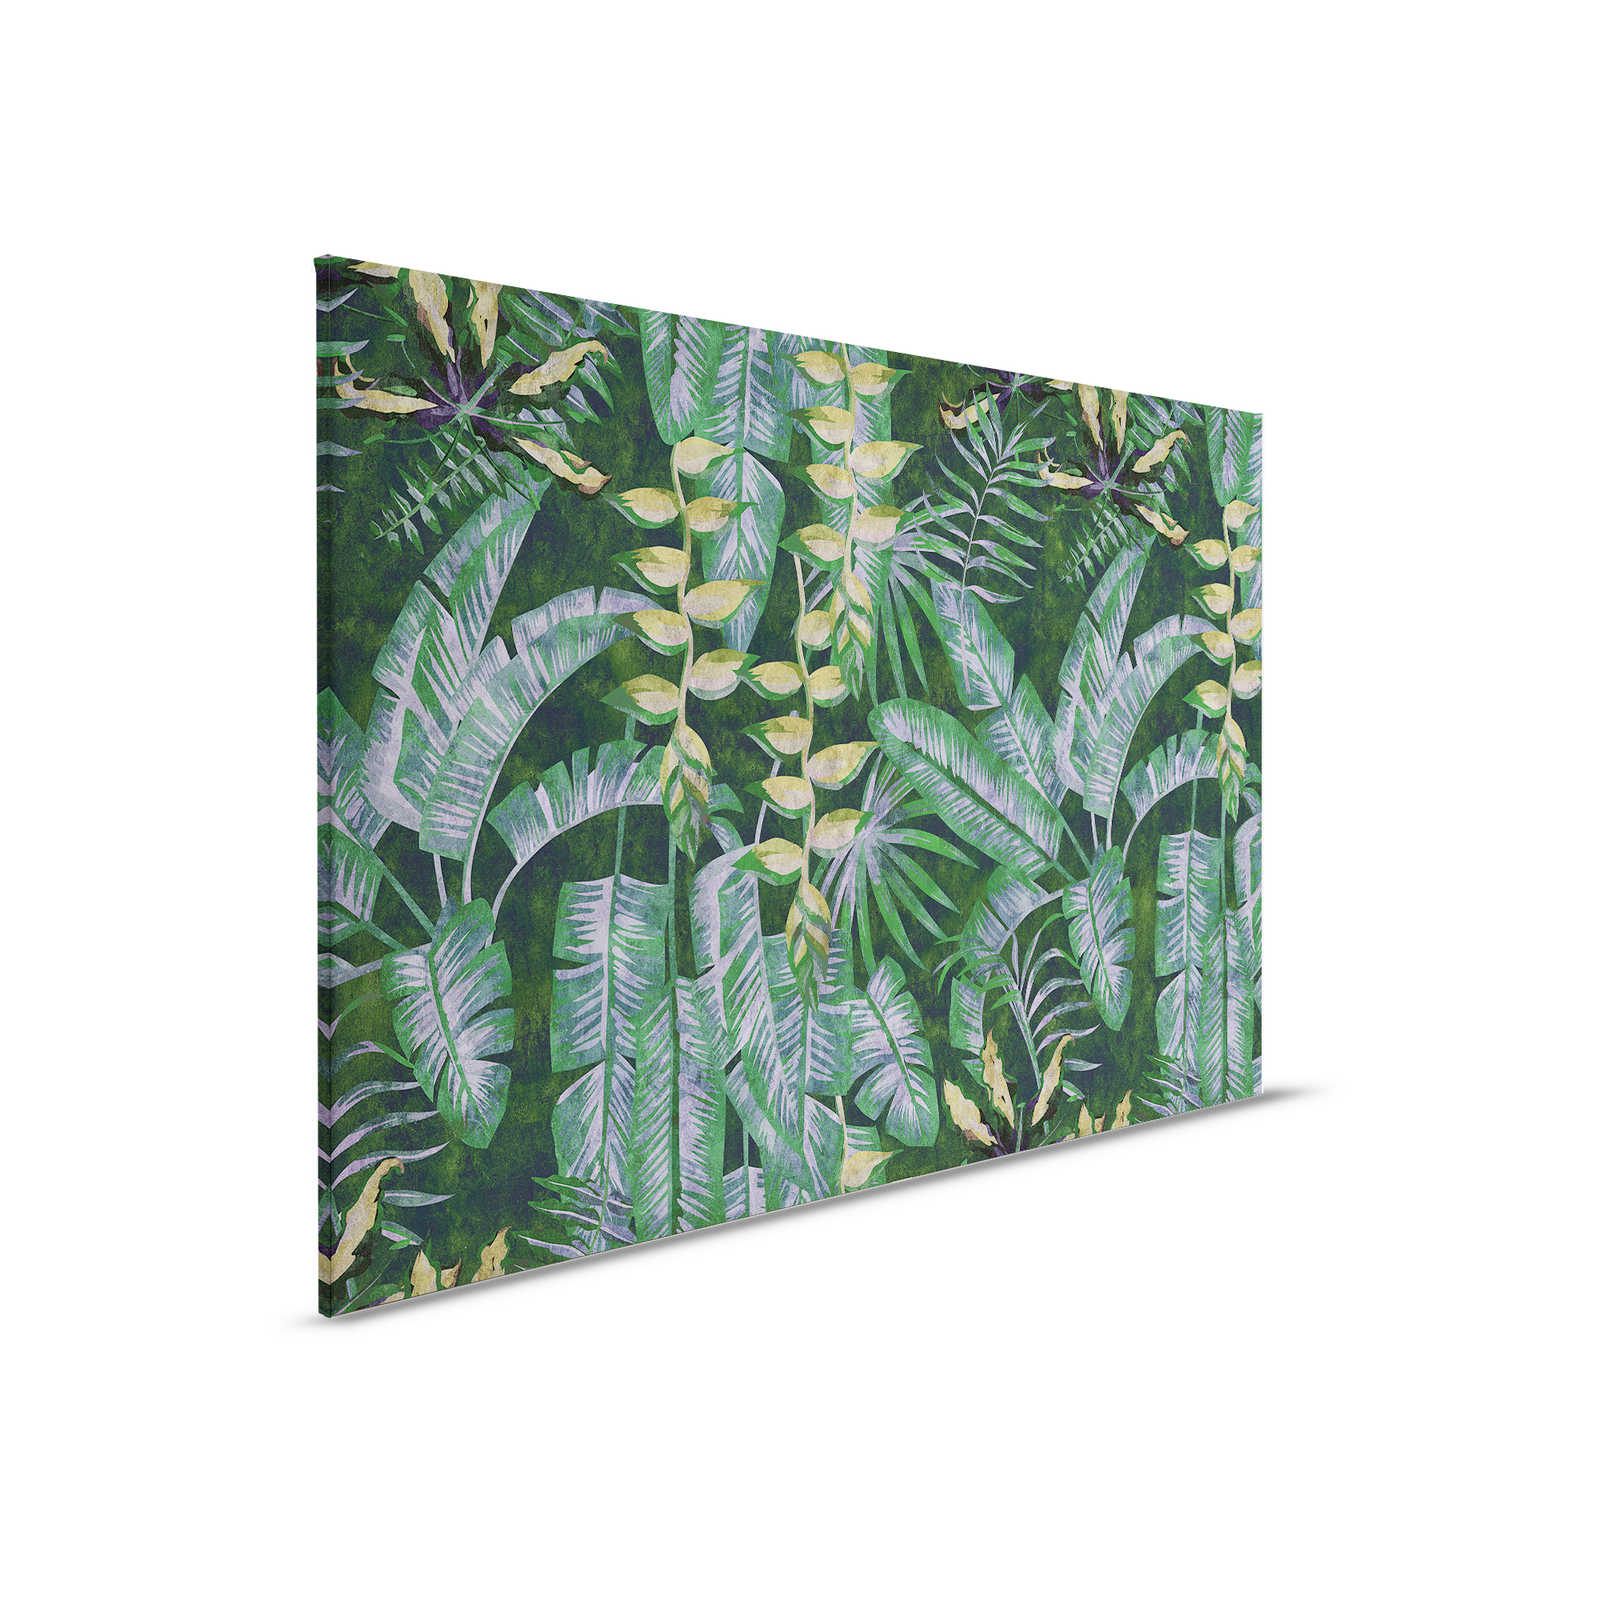 Tropicana 2 - Canvas schilderij met tropische planten - 0.90 m x 0.60 m
